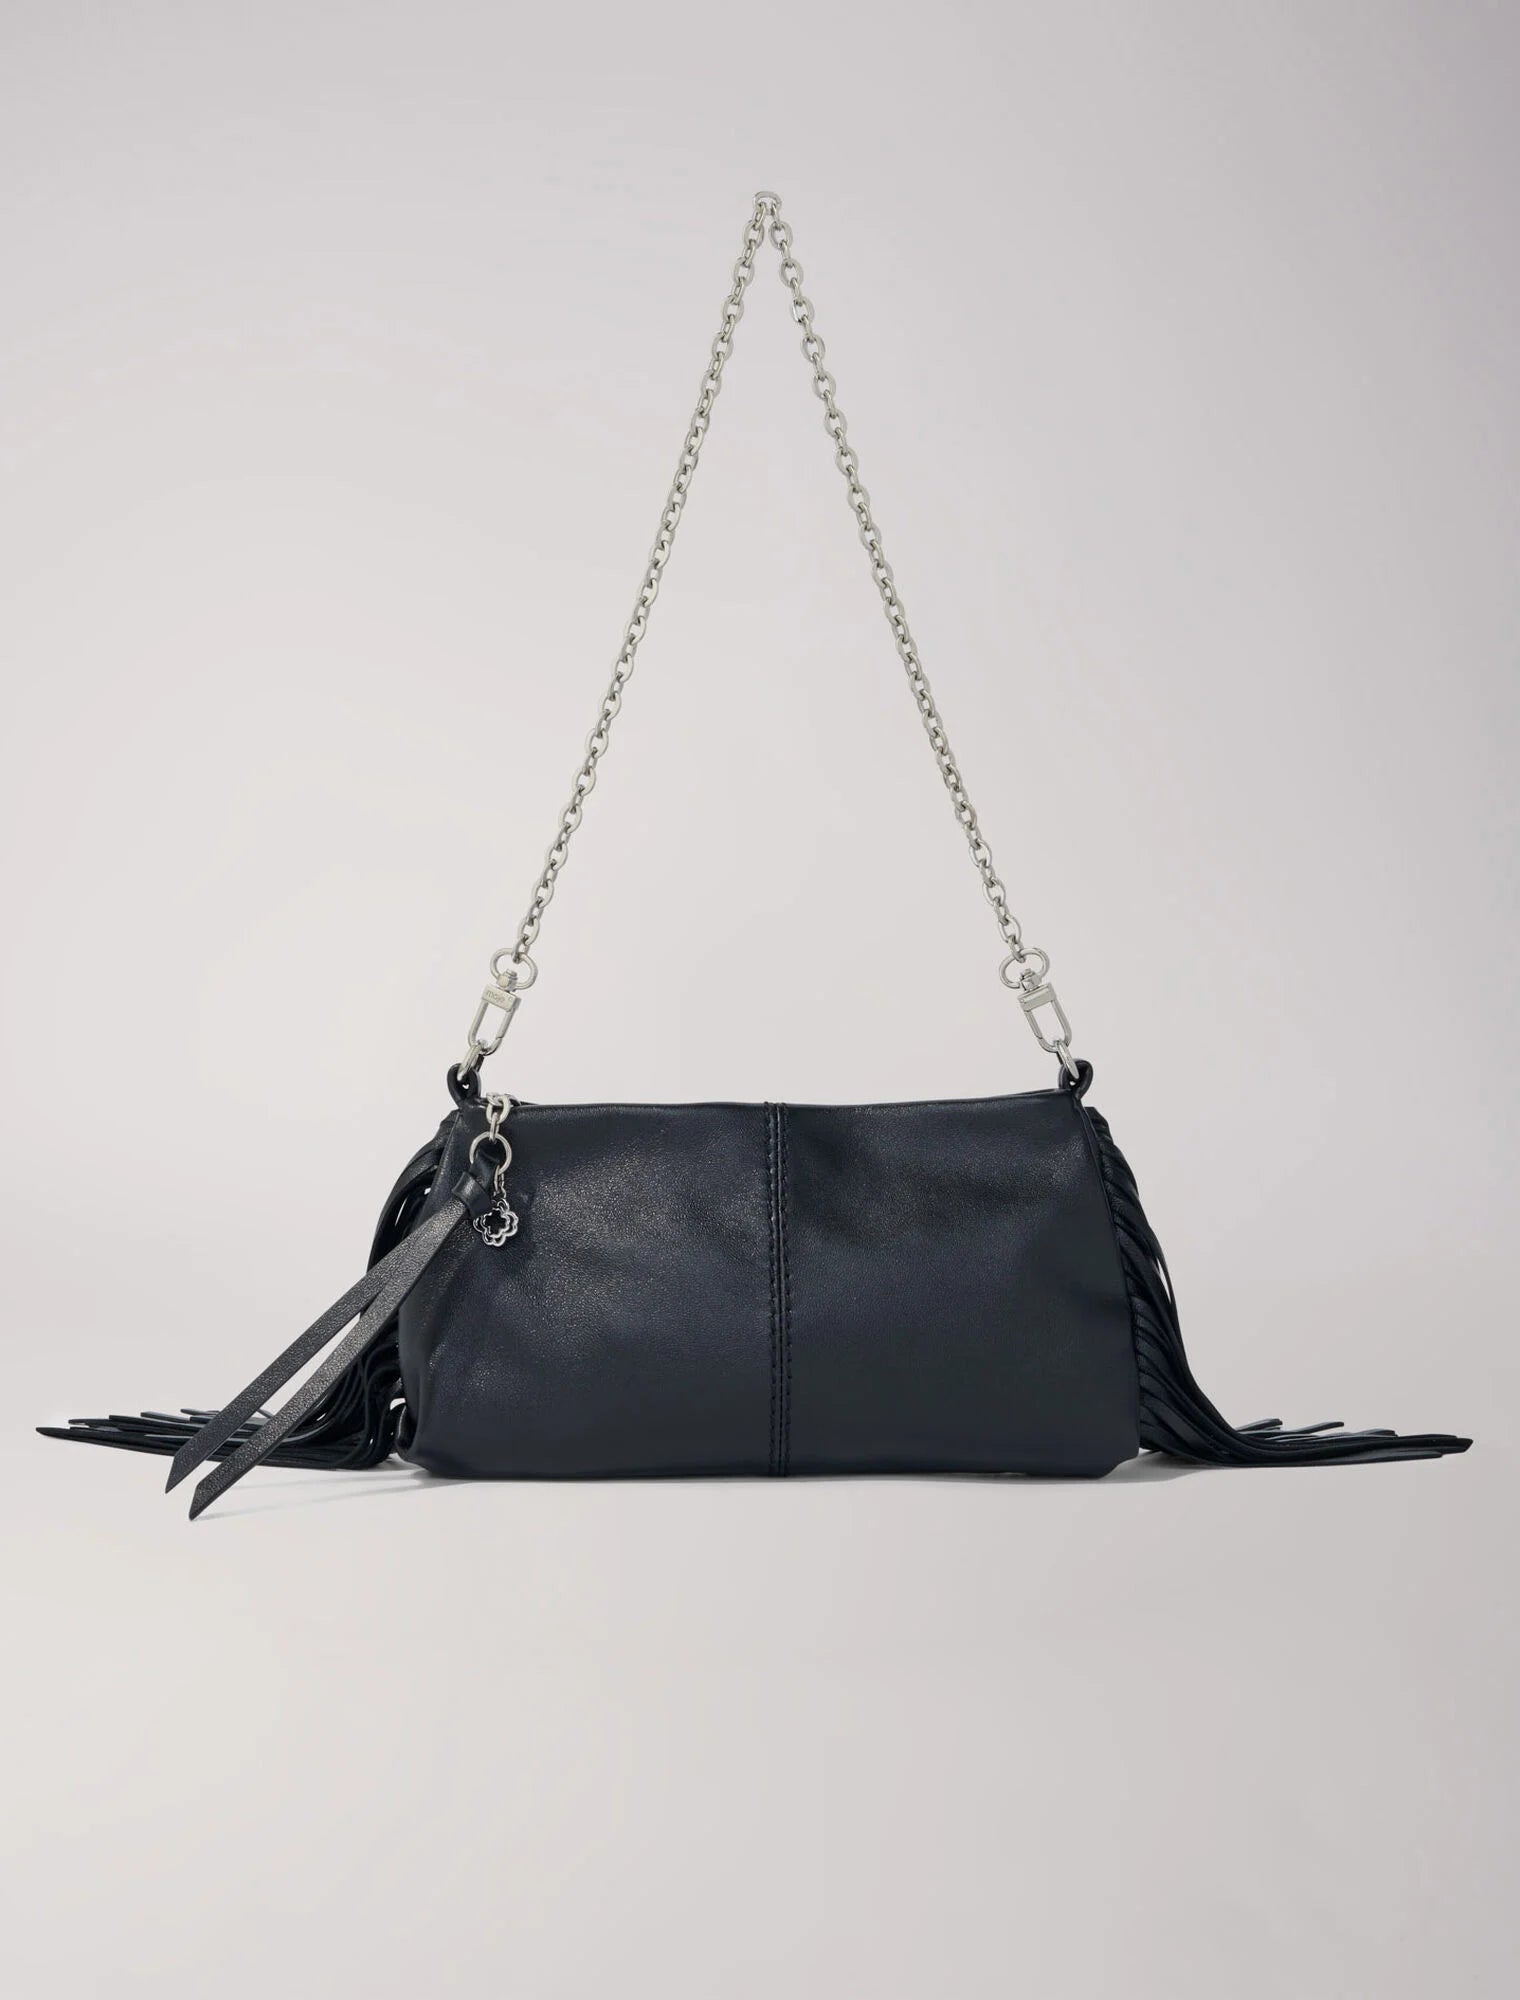 Miss M plain leather clutch bag